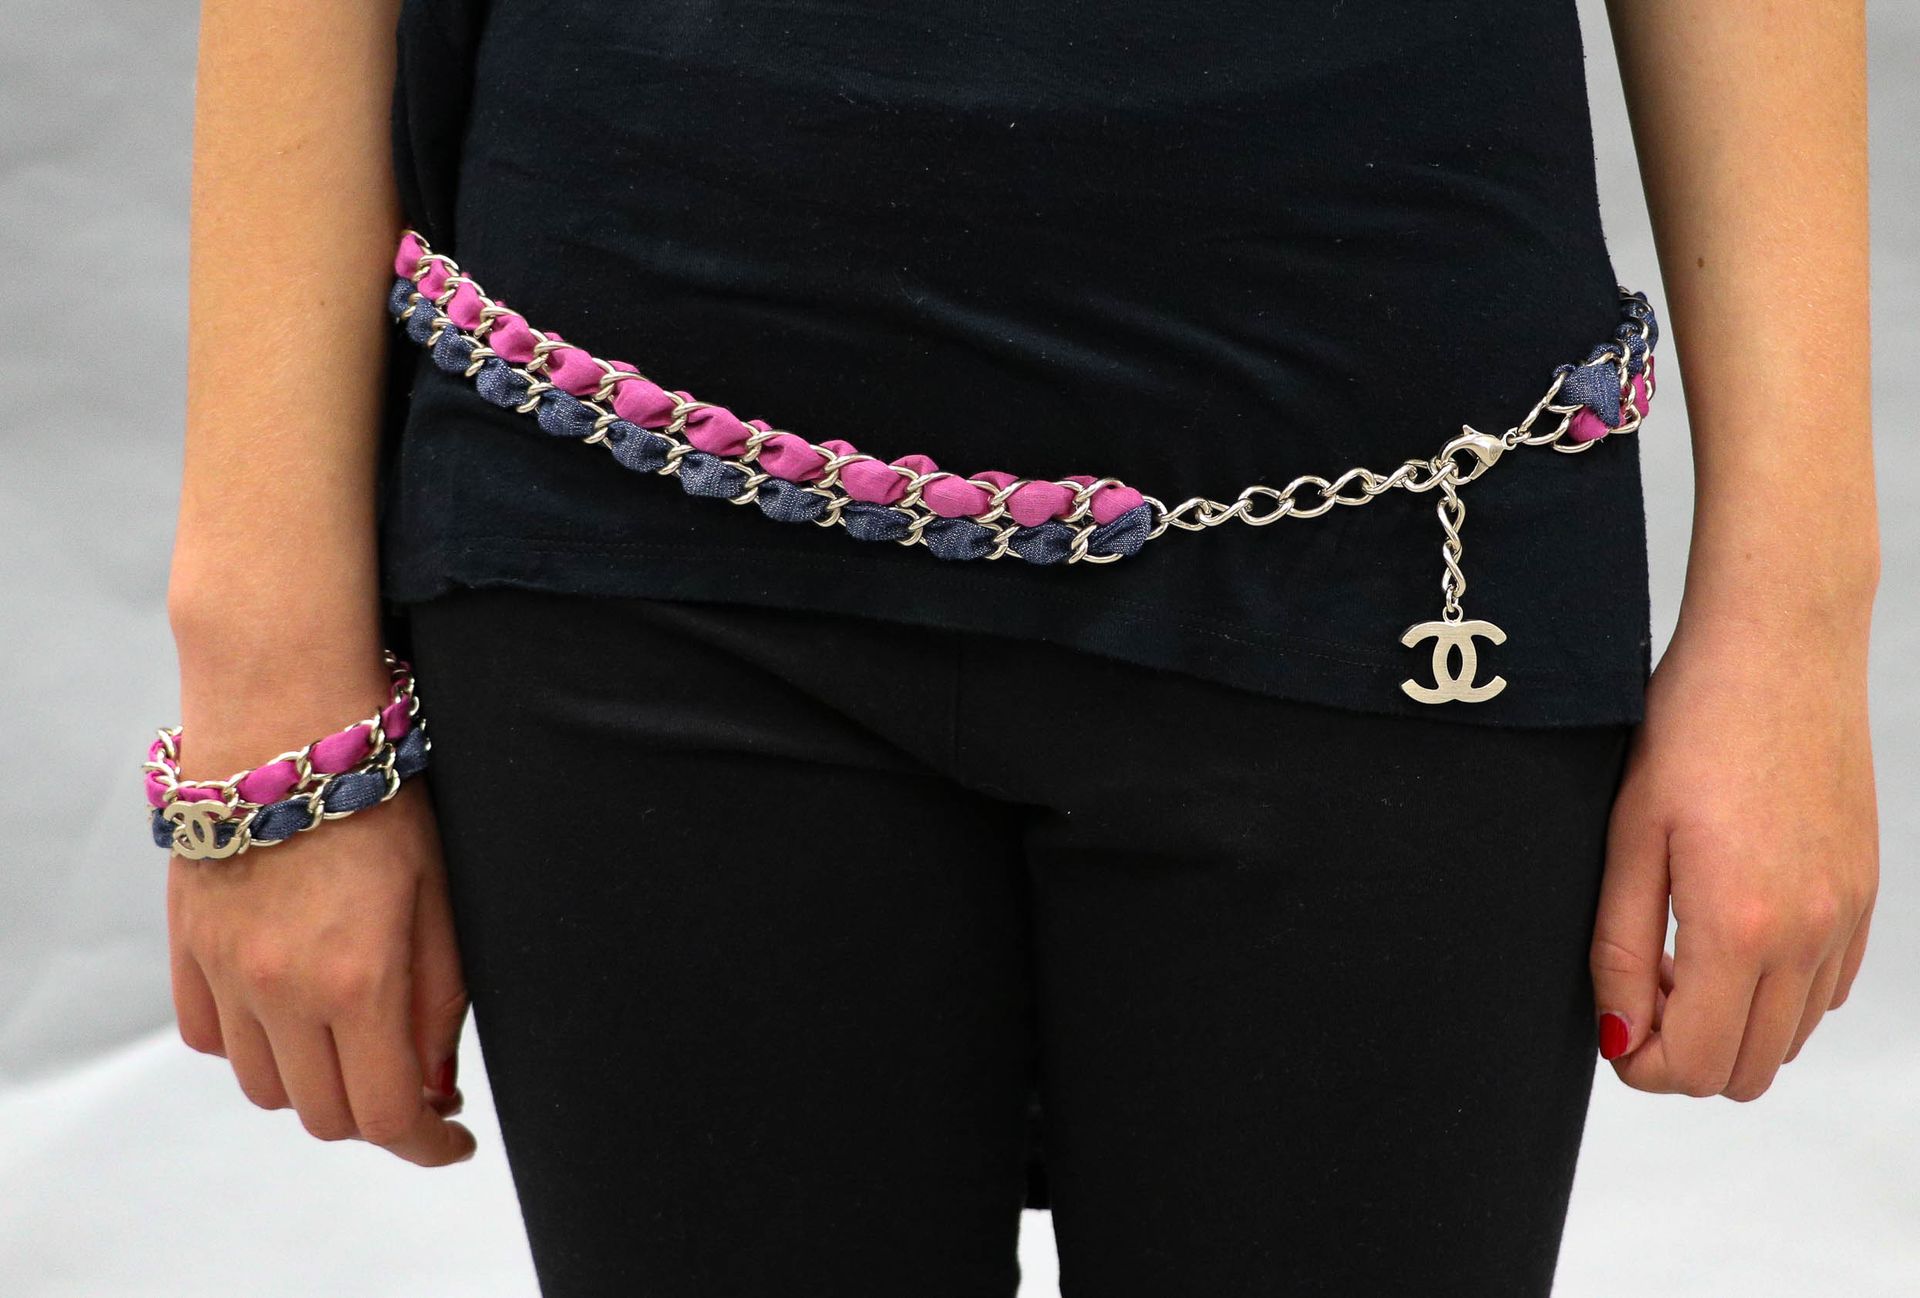 Null 香奈儿 - 约2009年 - 镀金金属和牛仔布及淡紫色织物的双链腰带或项链 - 包括一个以双交错C为中心的手镯 - 长：89.5厘米